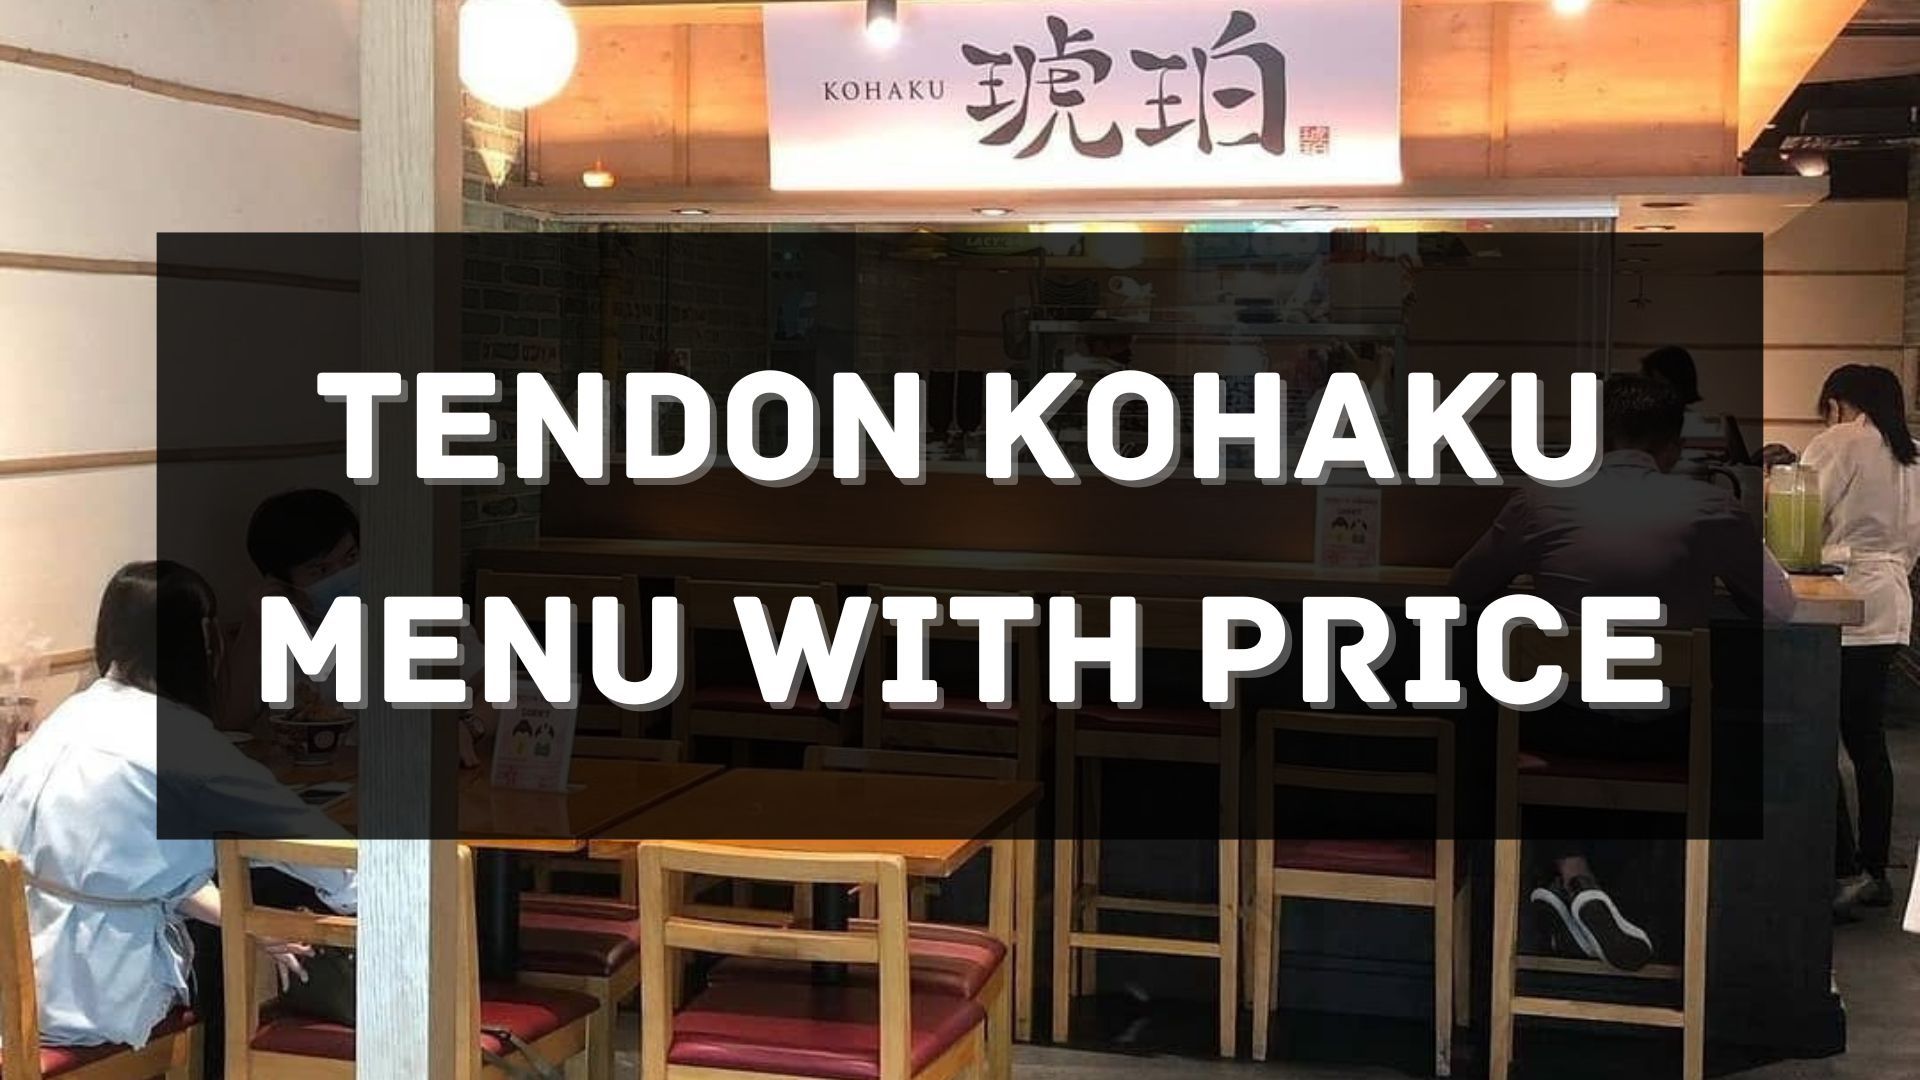 tendon kohaku menu prices singapore